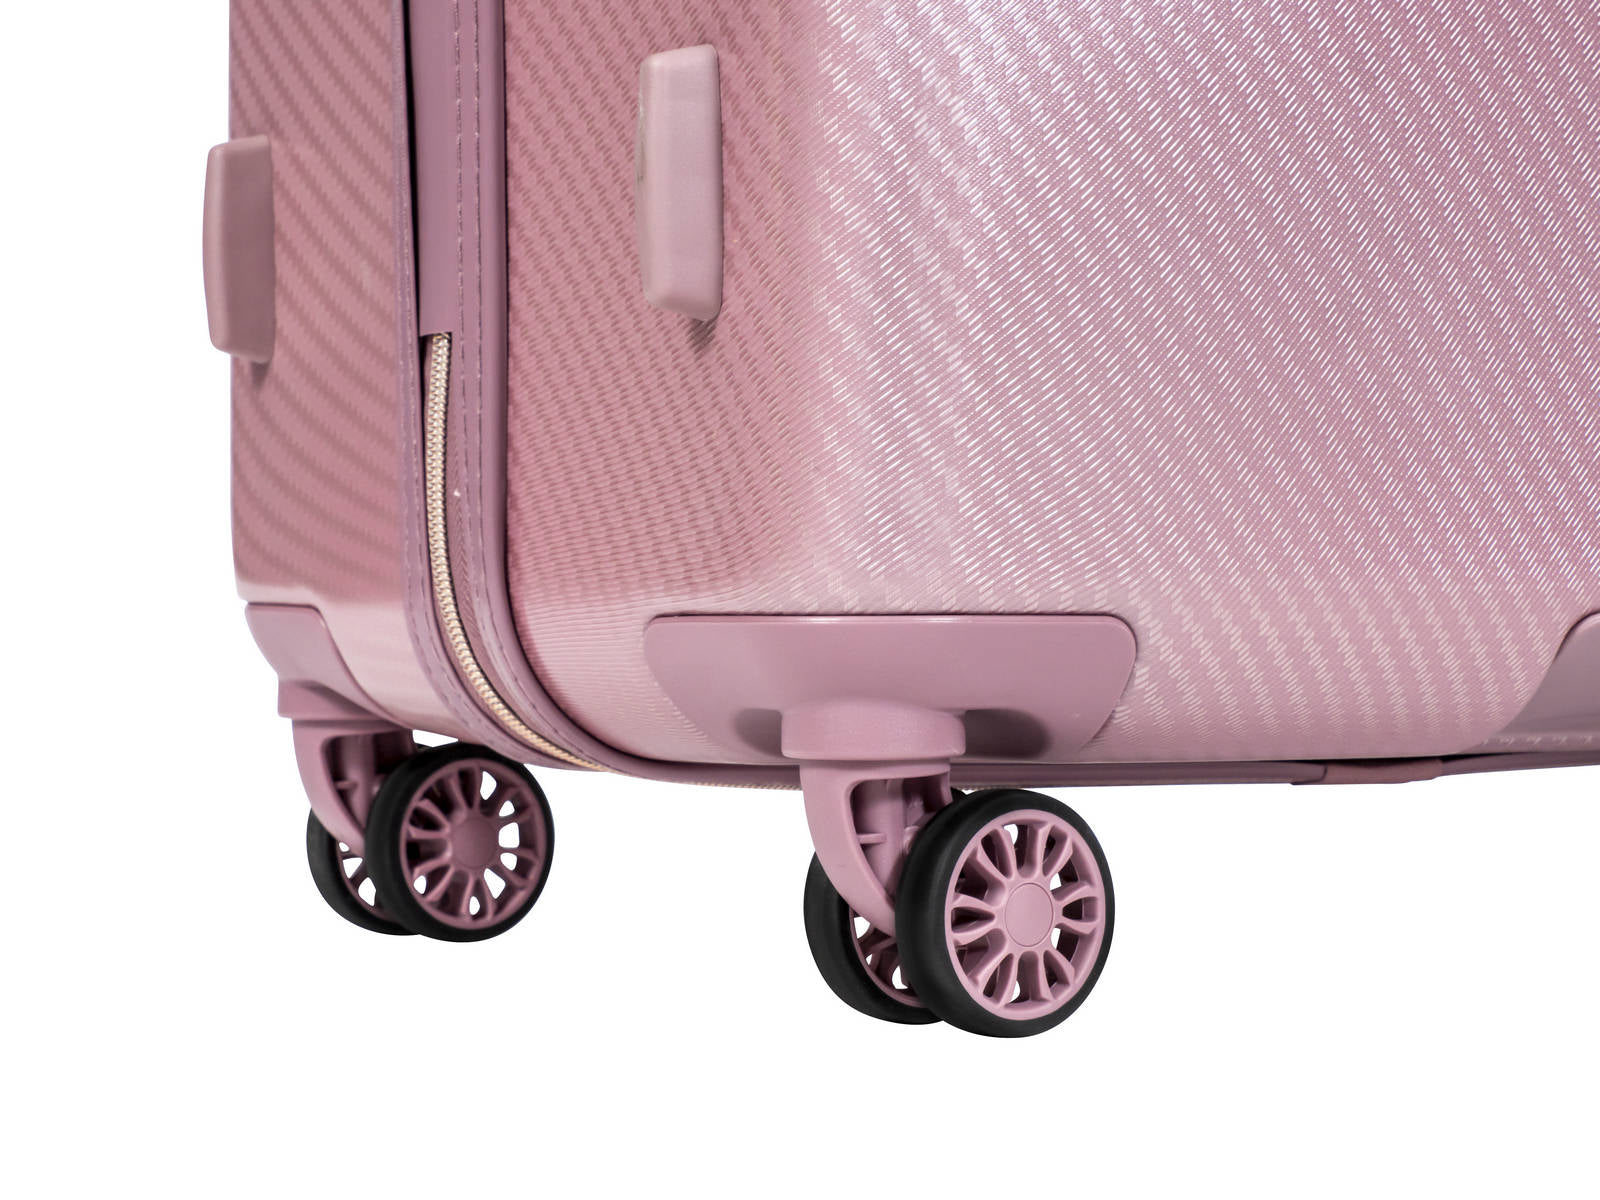 מזוודה קטנה עליה למטוס 20" אופנתיות מבית מעצבת העל Donna Karan DKNY דגם ALLURE 2.0